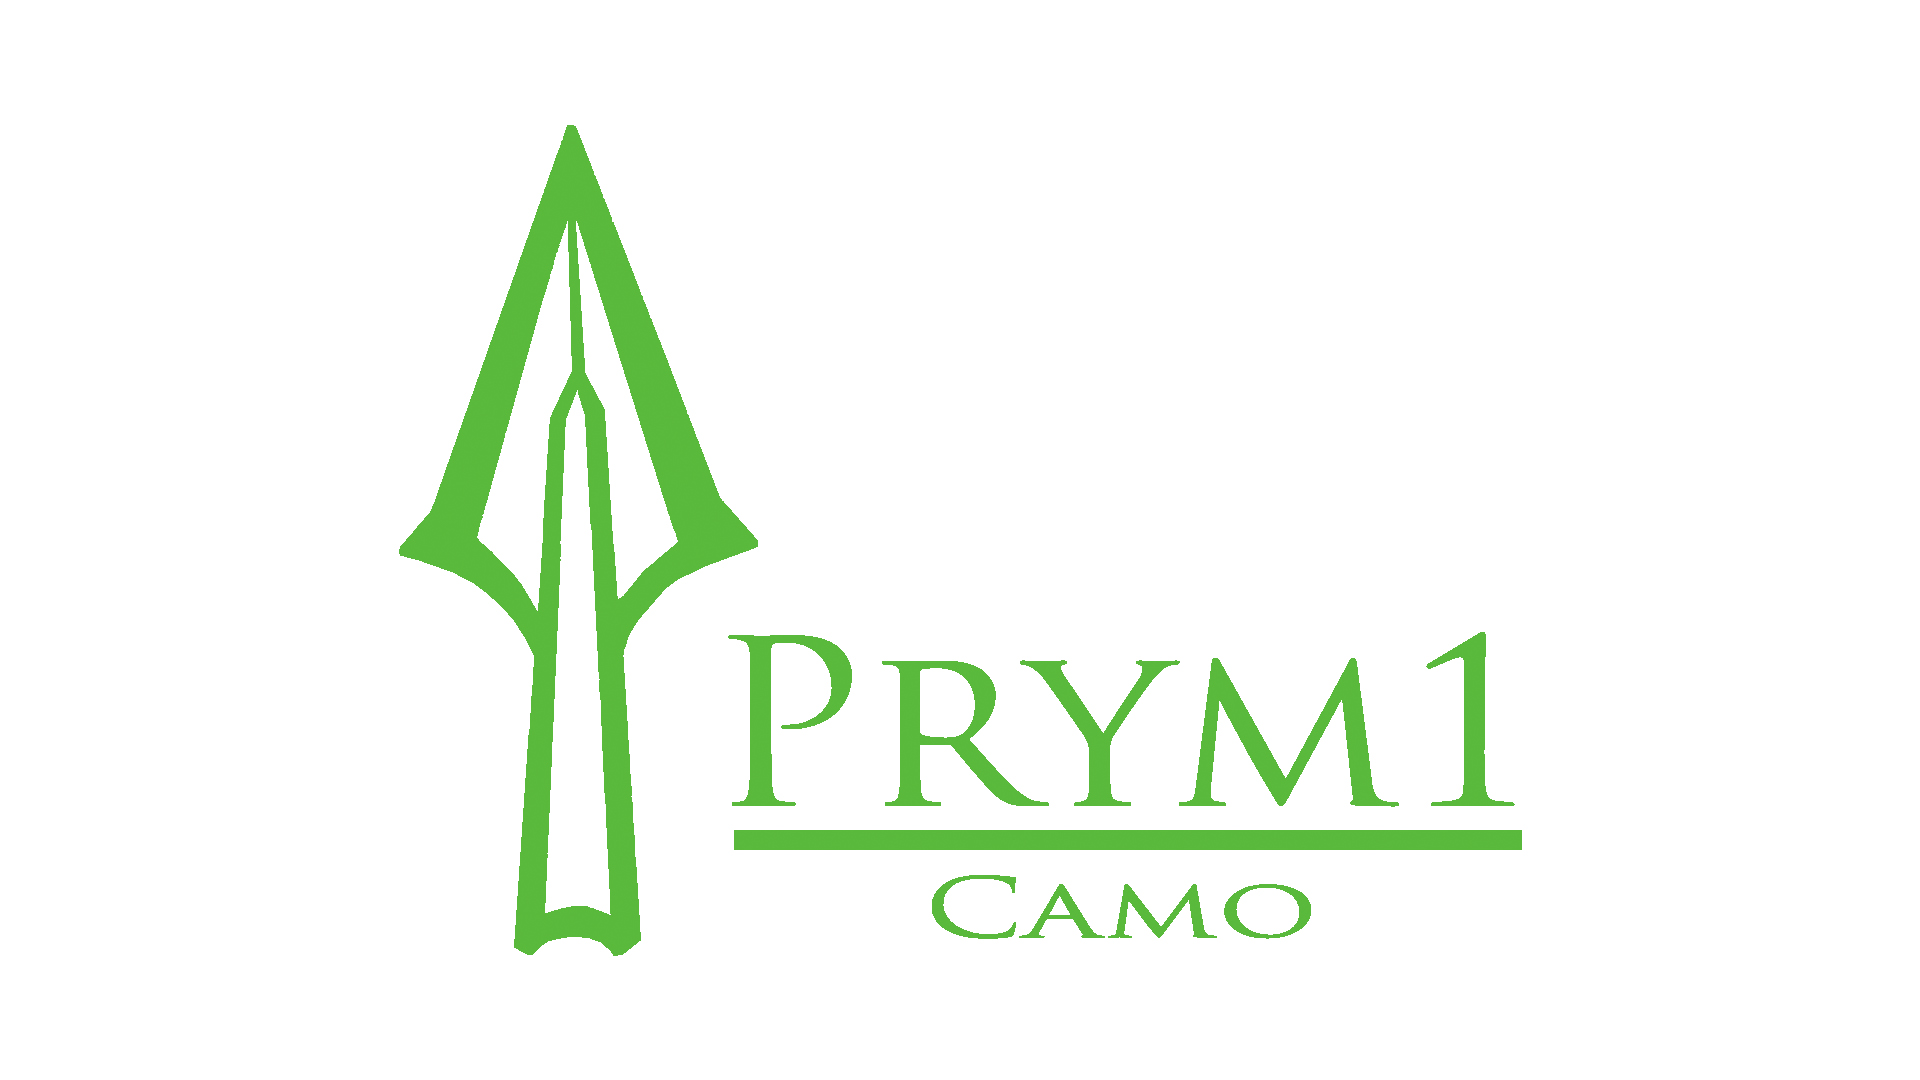 Prym 1 logo.jpg